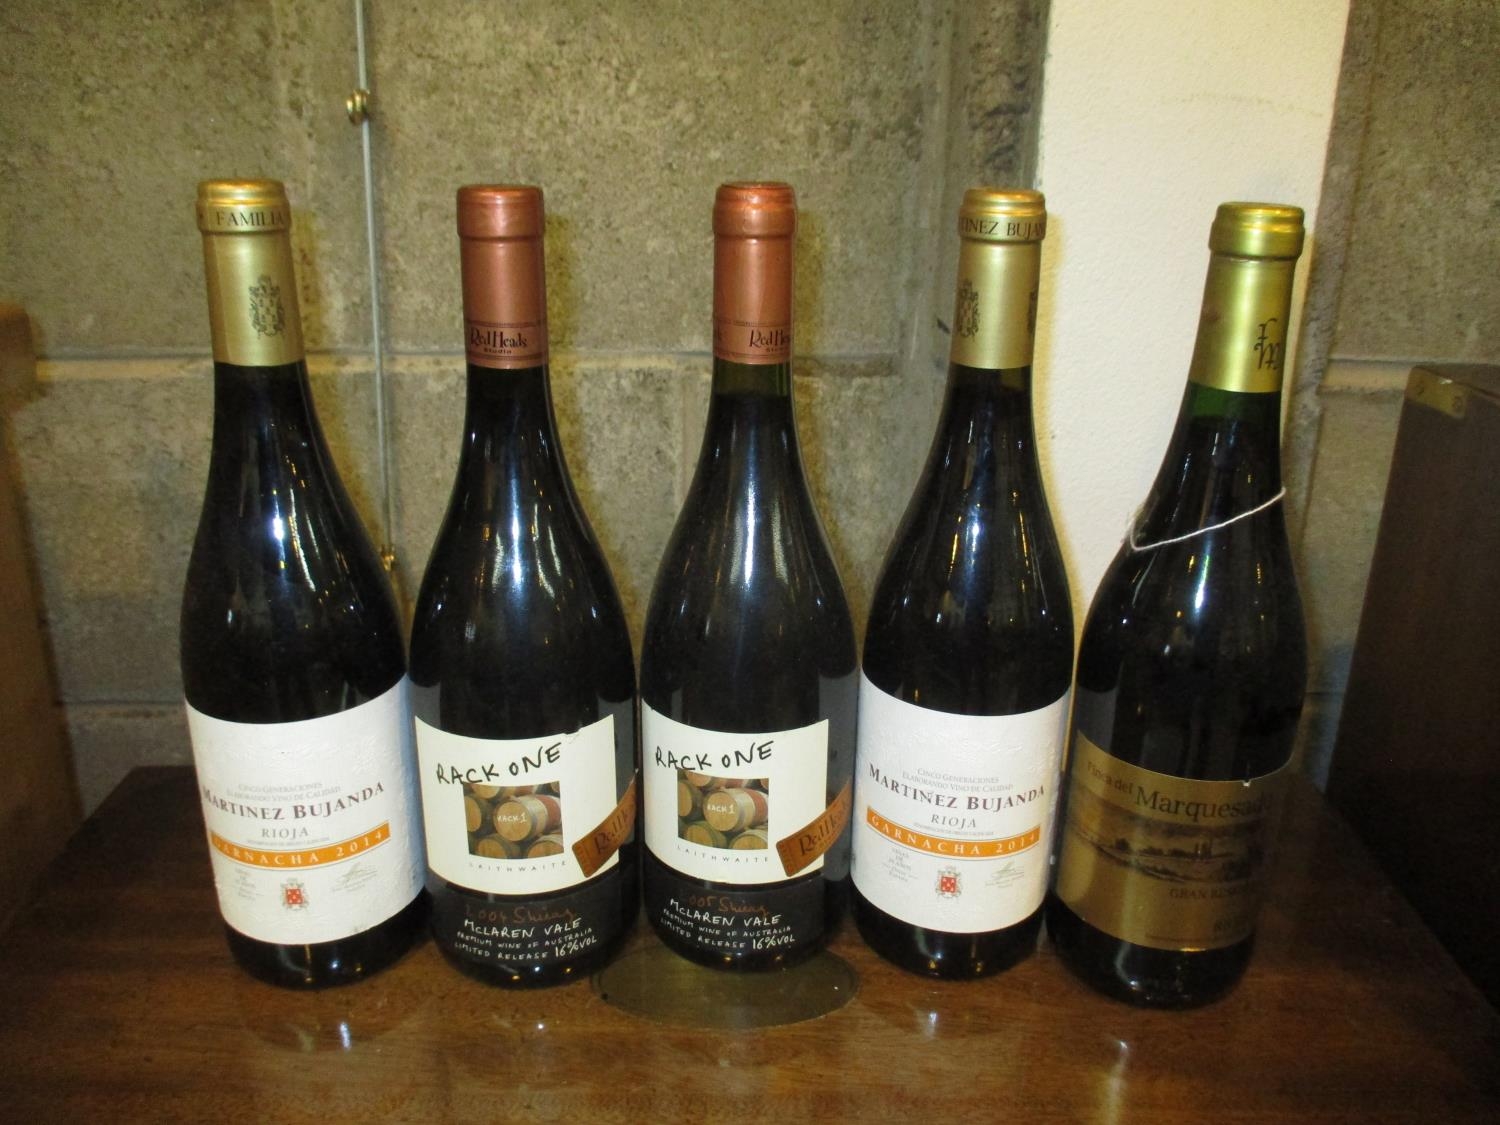 Two Bottles Martinez Bujanda Rioja 2014, Finca del Marquesado Grand Reserva Rioja 2008, and Two